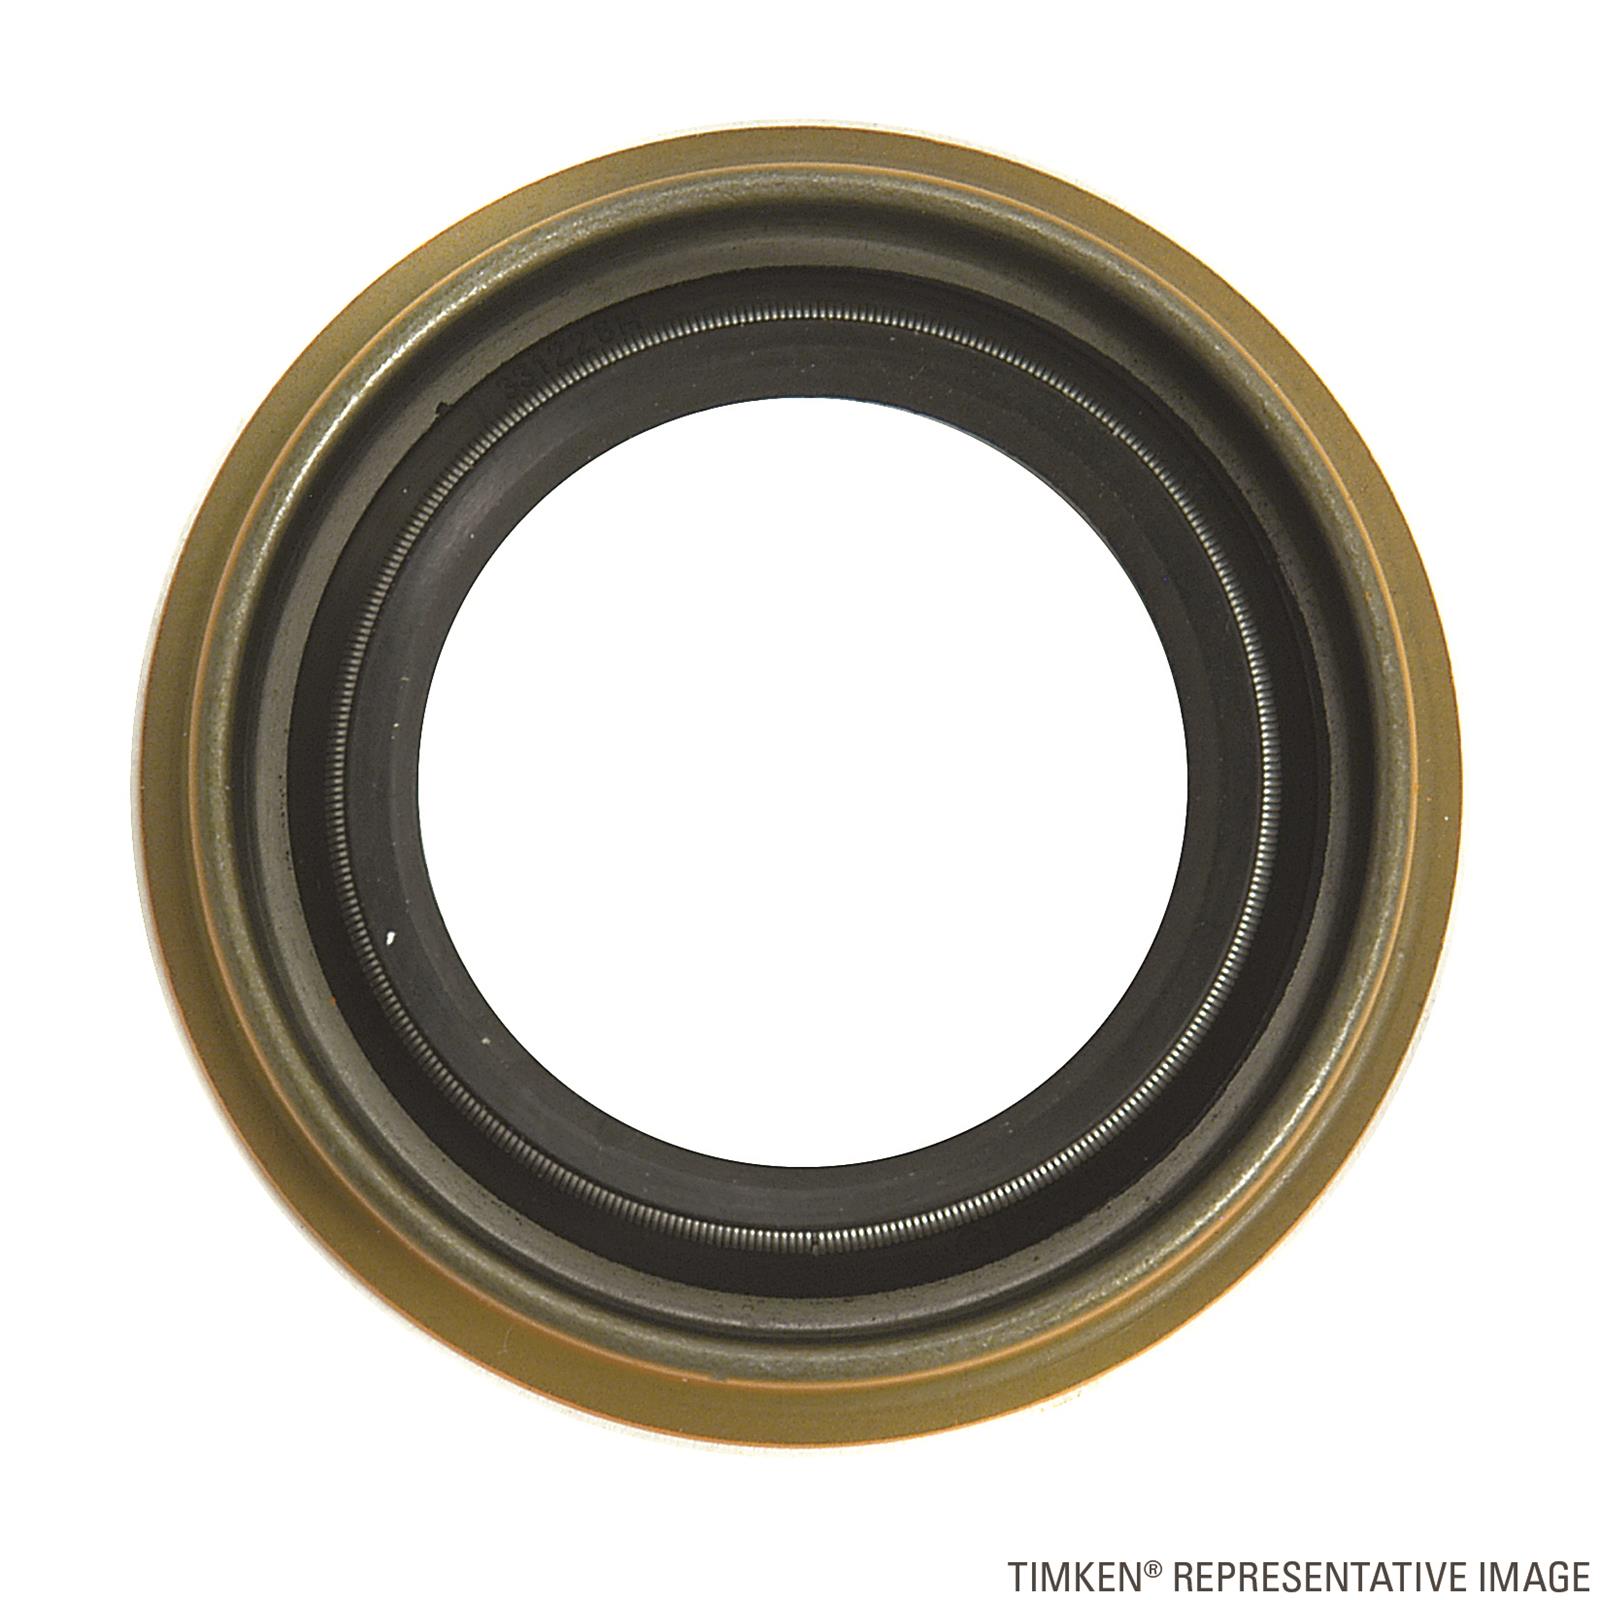 Timken Premium 710535 Torque Converter Seal  12 Month 12,000 Mile Warranty